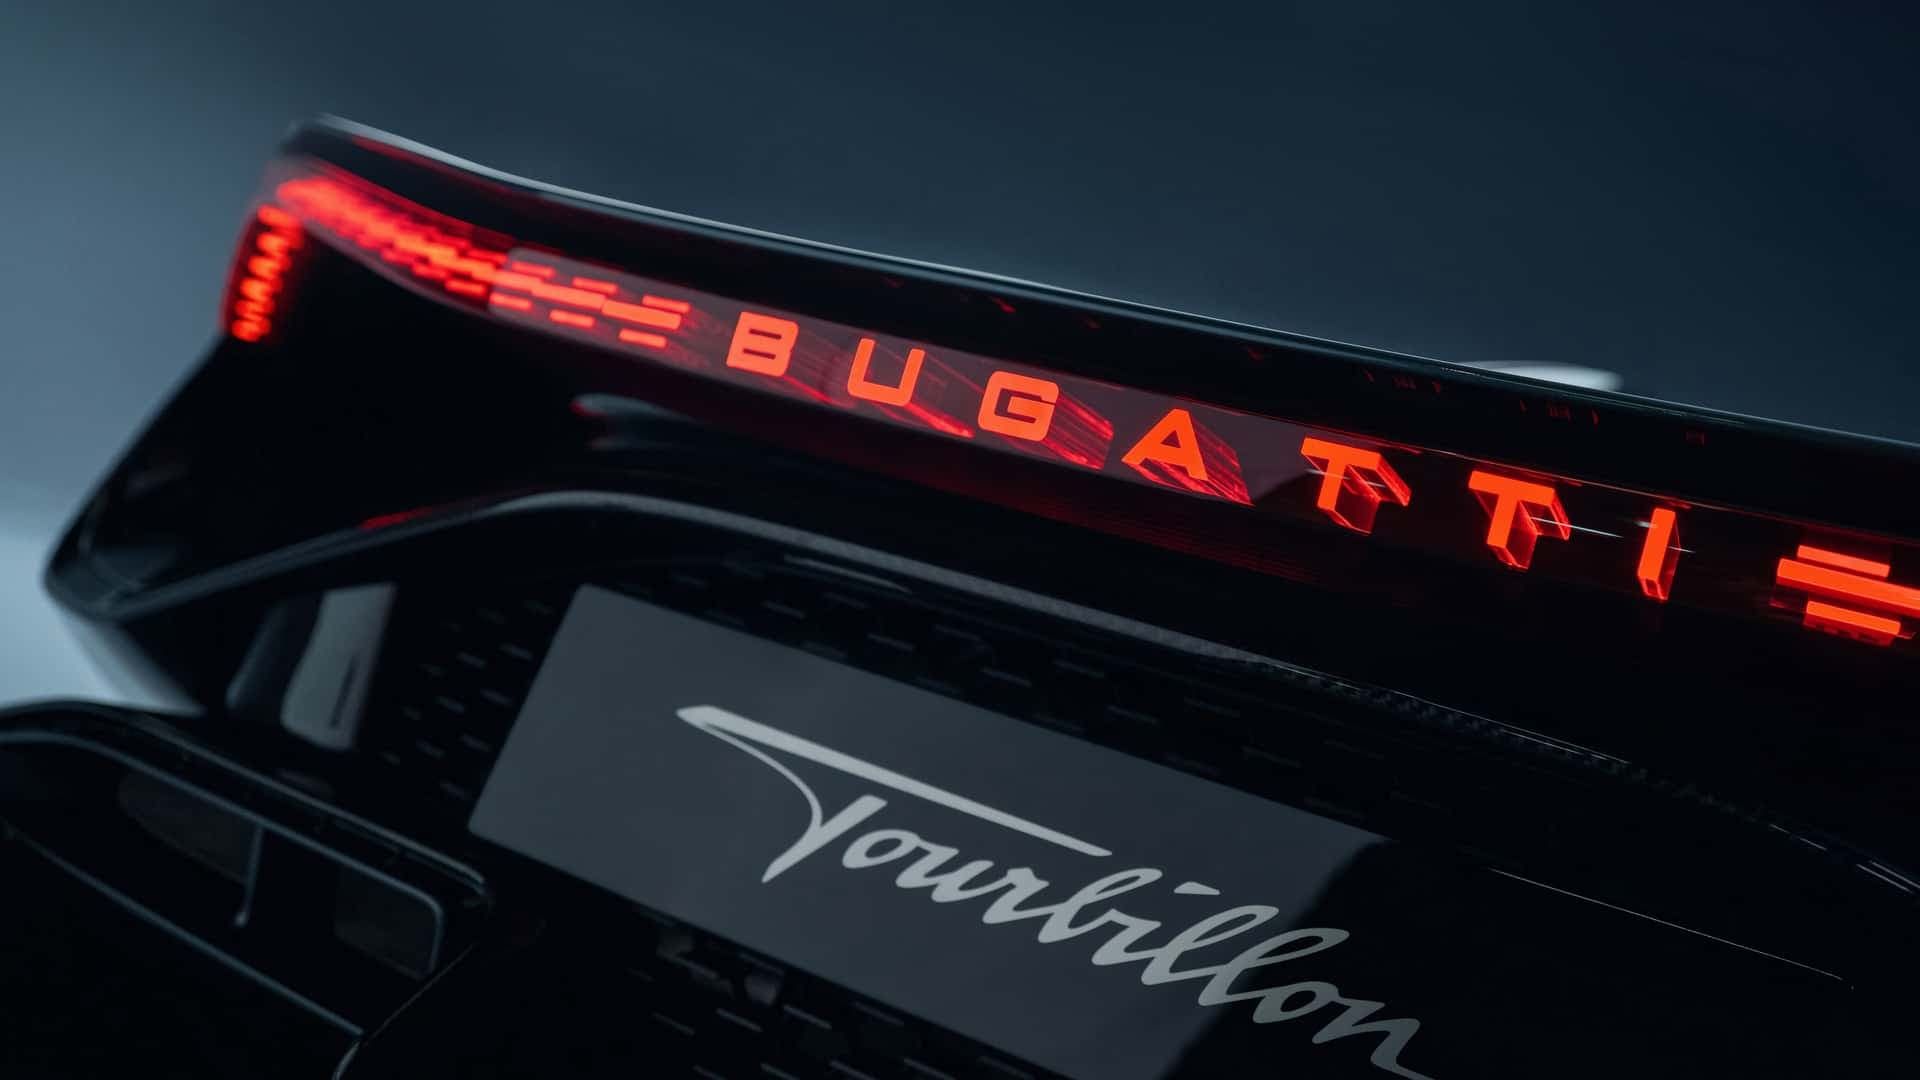 لوگو بوگاتی / Bugatti روی خودرو بوگاتی توربیون